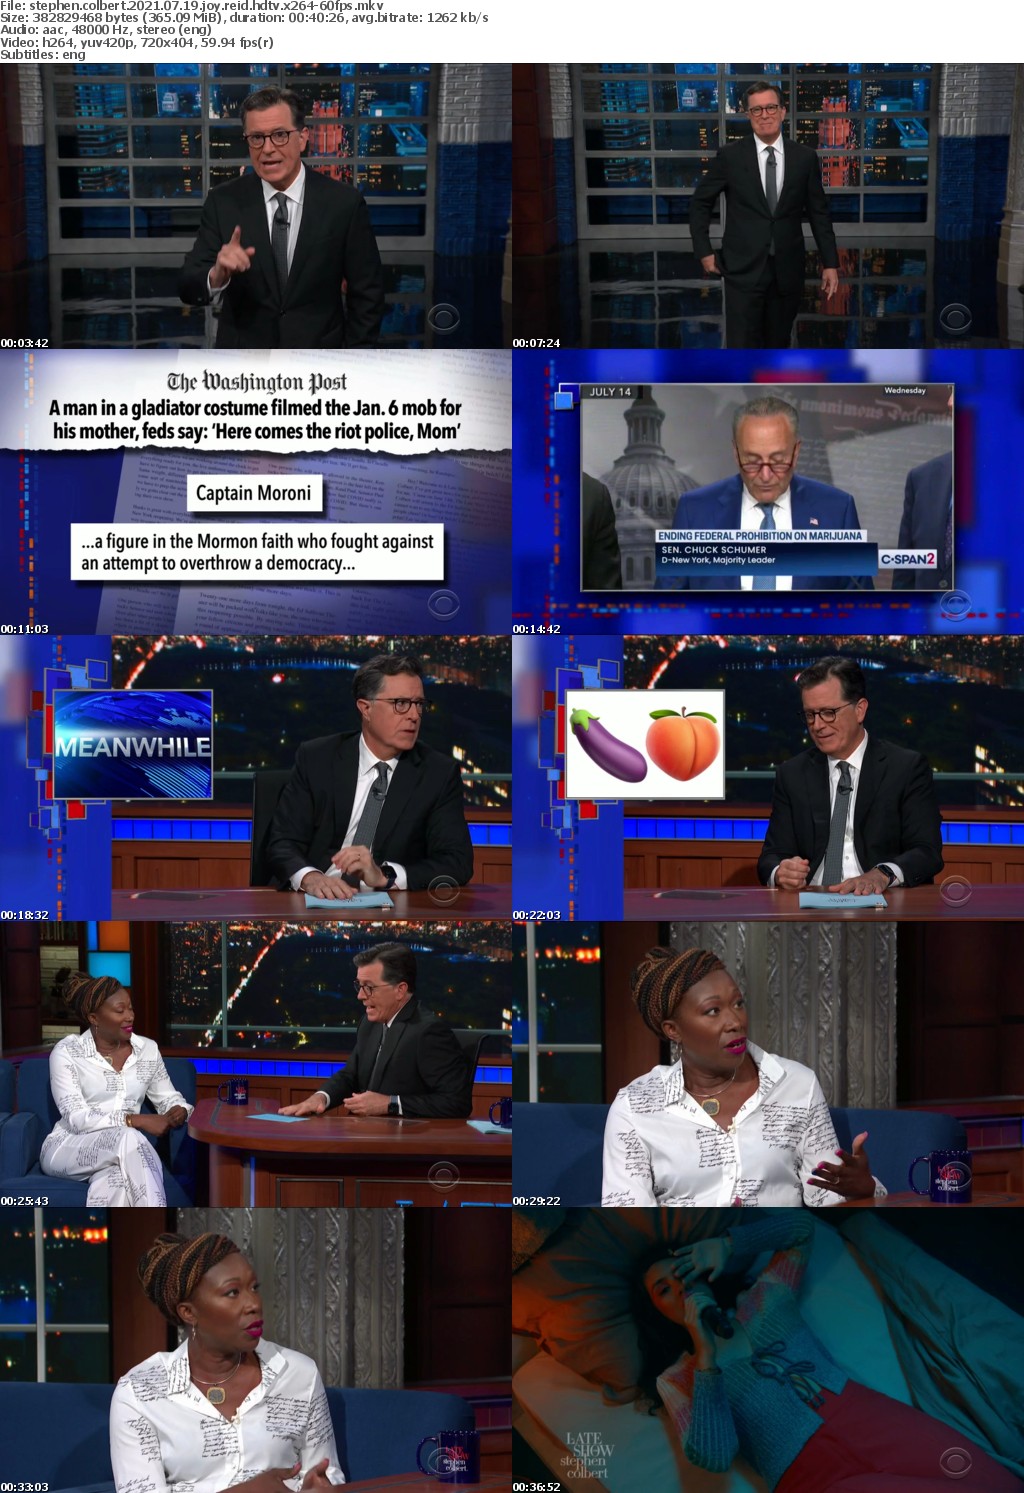 Stephen Colbert 2021 07 19 Joy Reid HDTV x264-60FPS